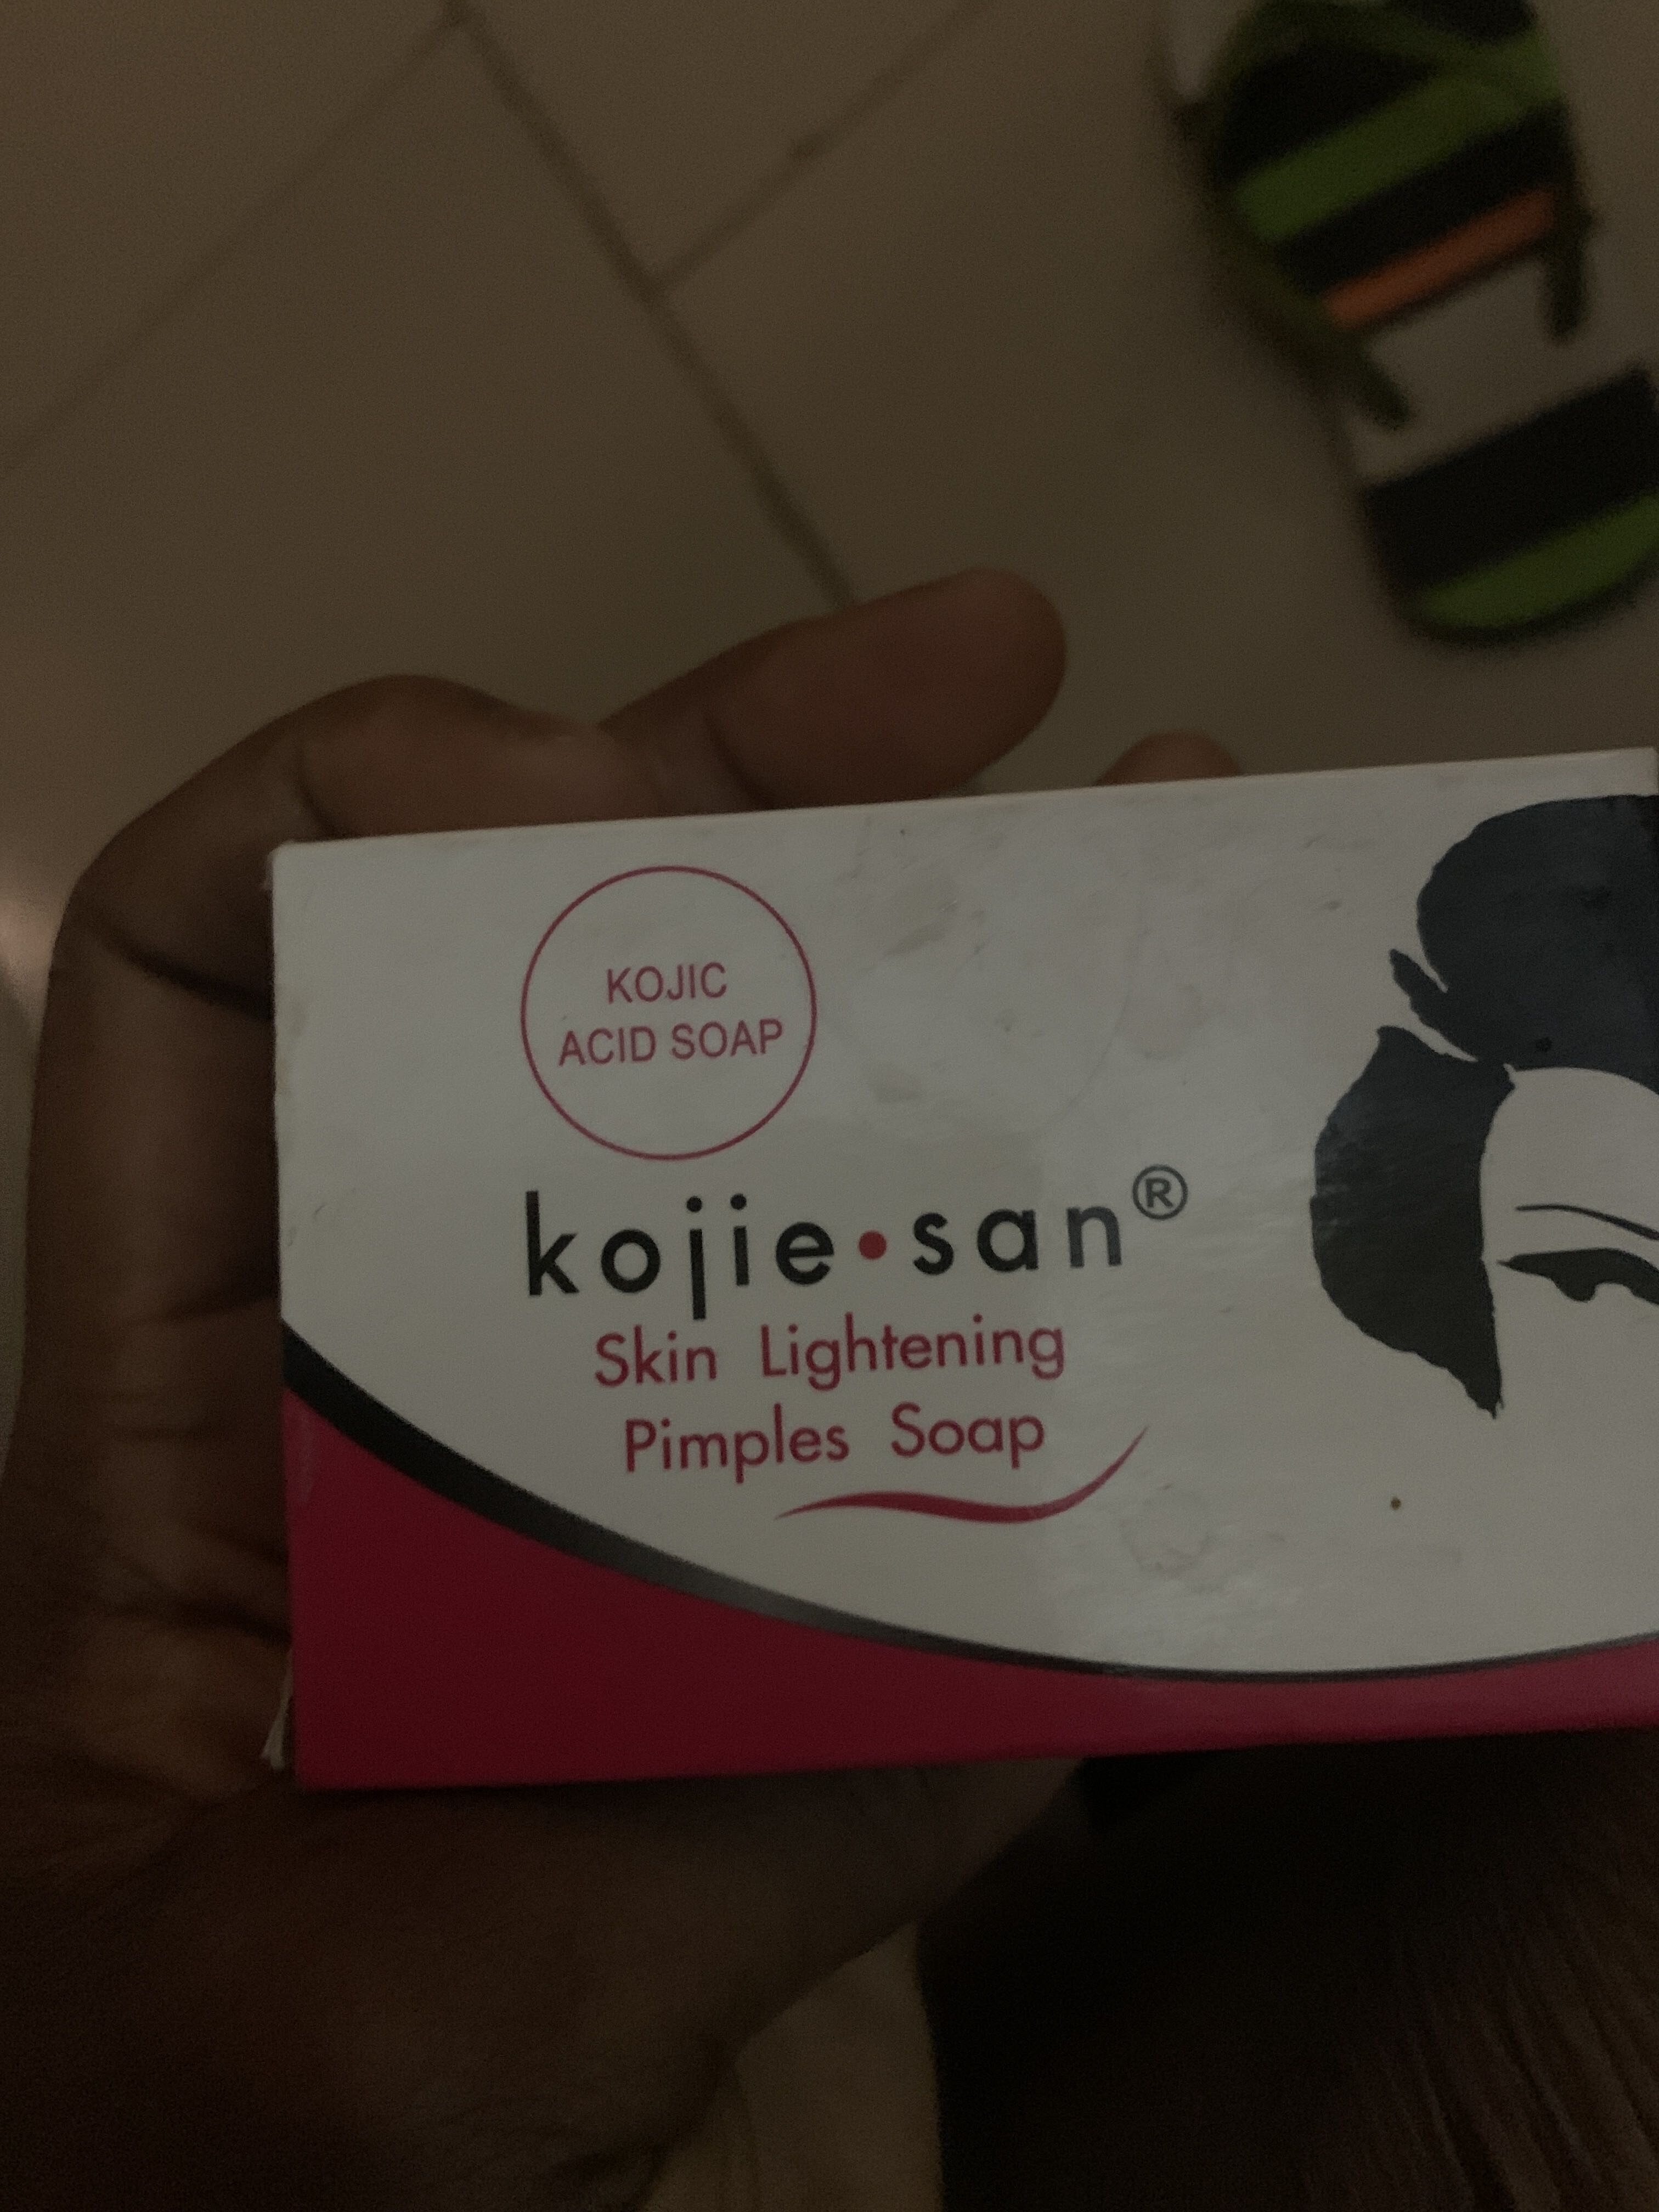 Kojie San skin lightening pimples soap - 製品 - en